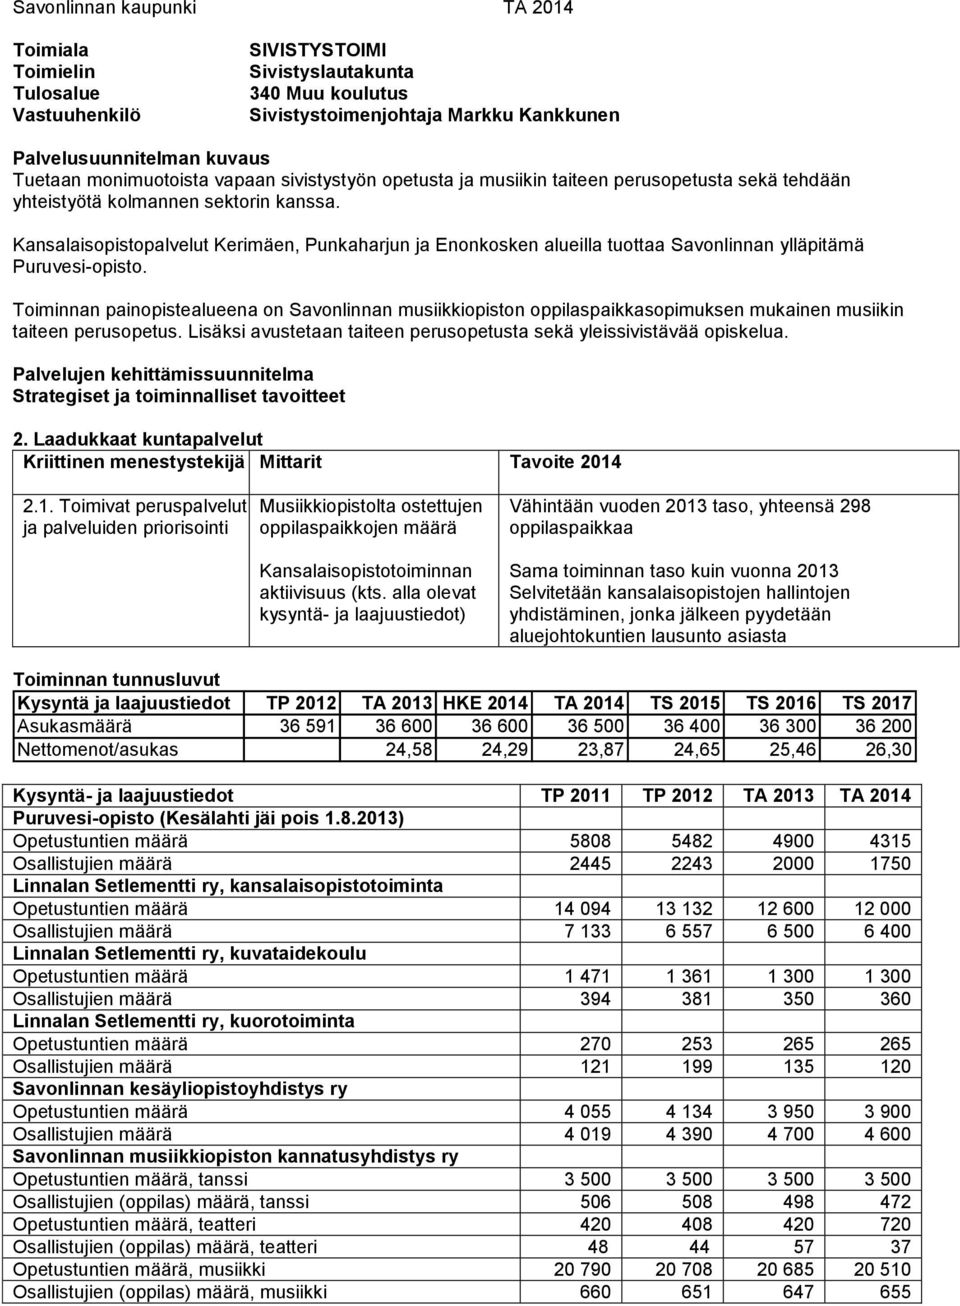 Kansalaisopistopalvelut Kerimäen, Punkaharjun ja Enonkosken alueilla tuottaa Savonlinnan ylläpitämä Puruvesi-opisto.